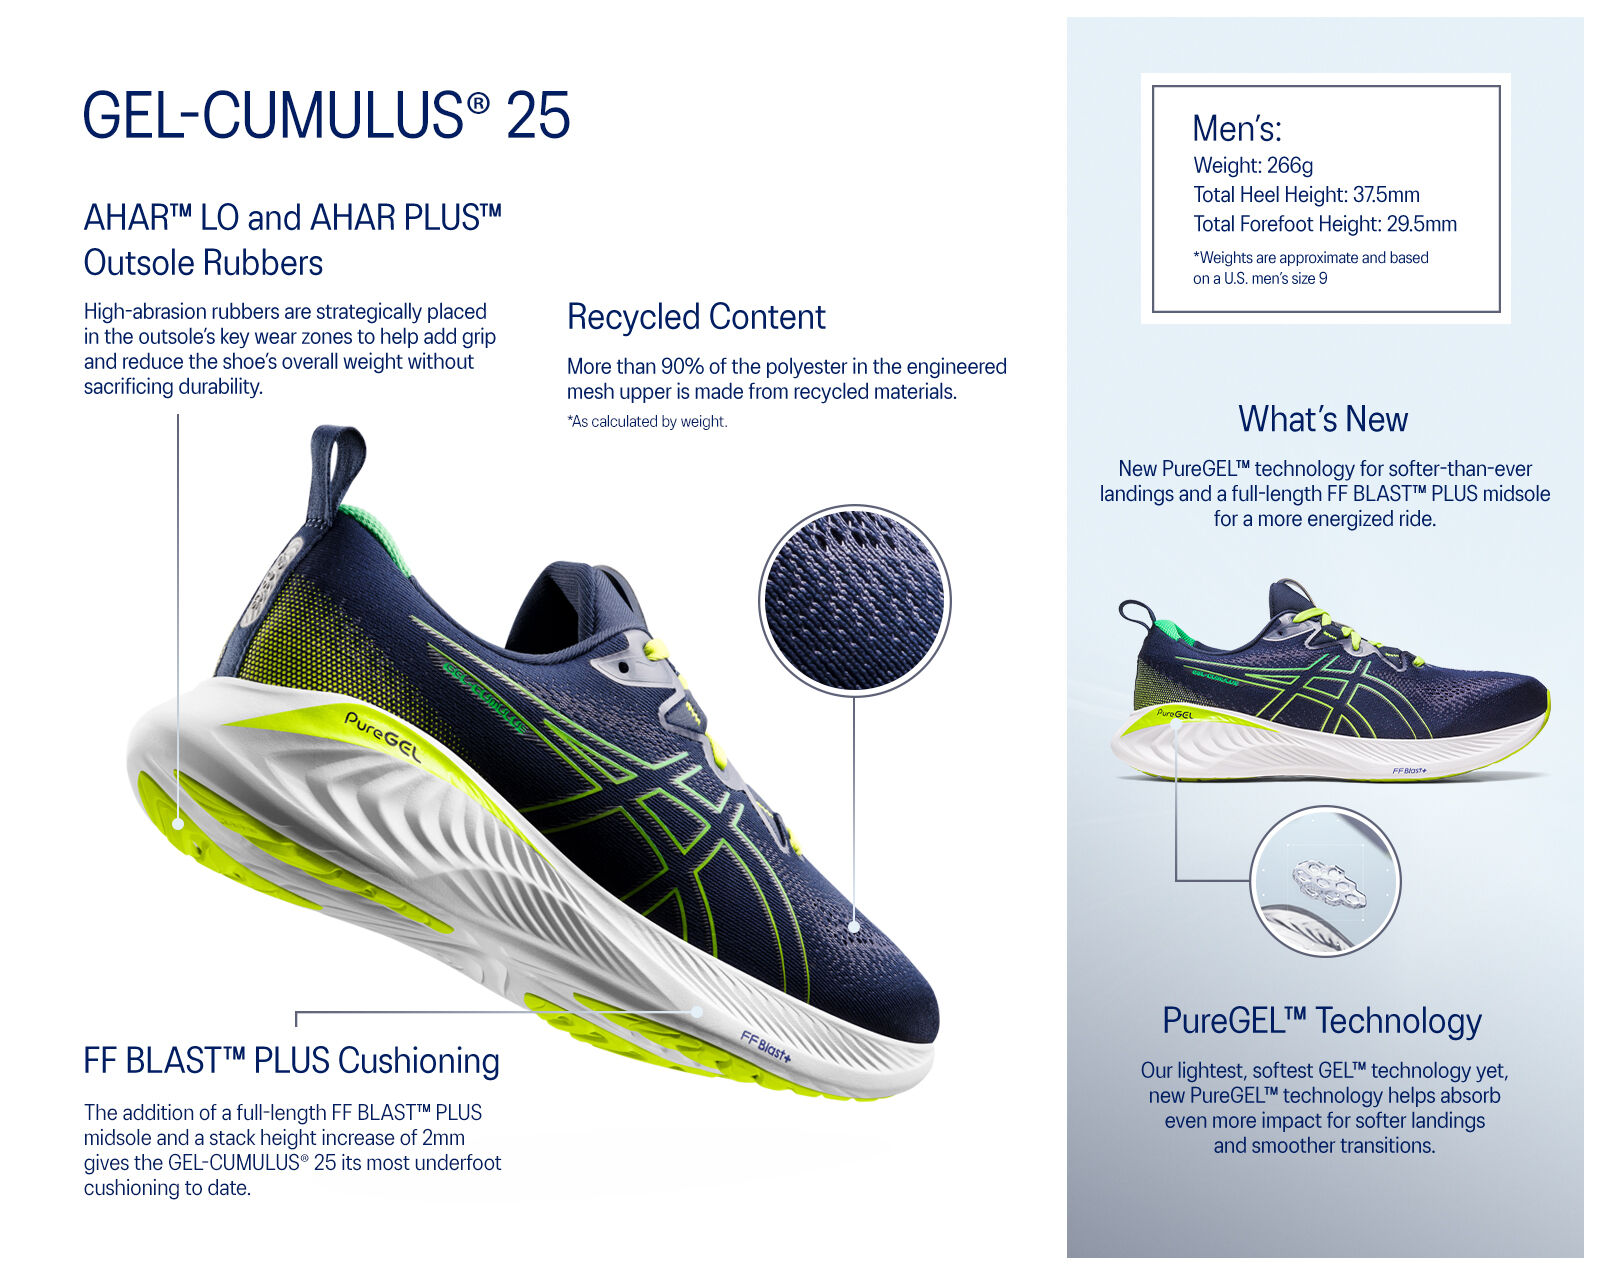 Men's GEL-CUMULUS 25 | Illusion Blue/Glow Yellow | Running Shoes 